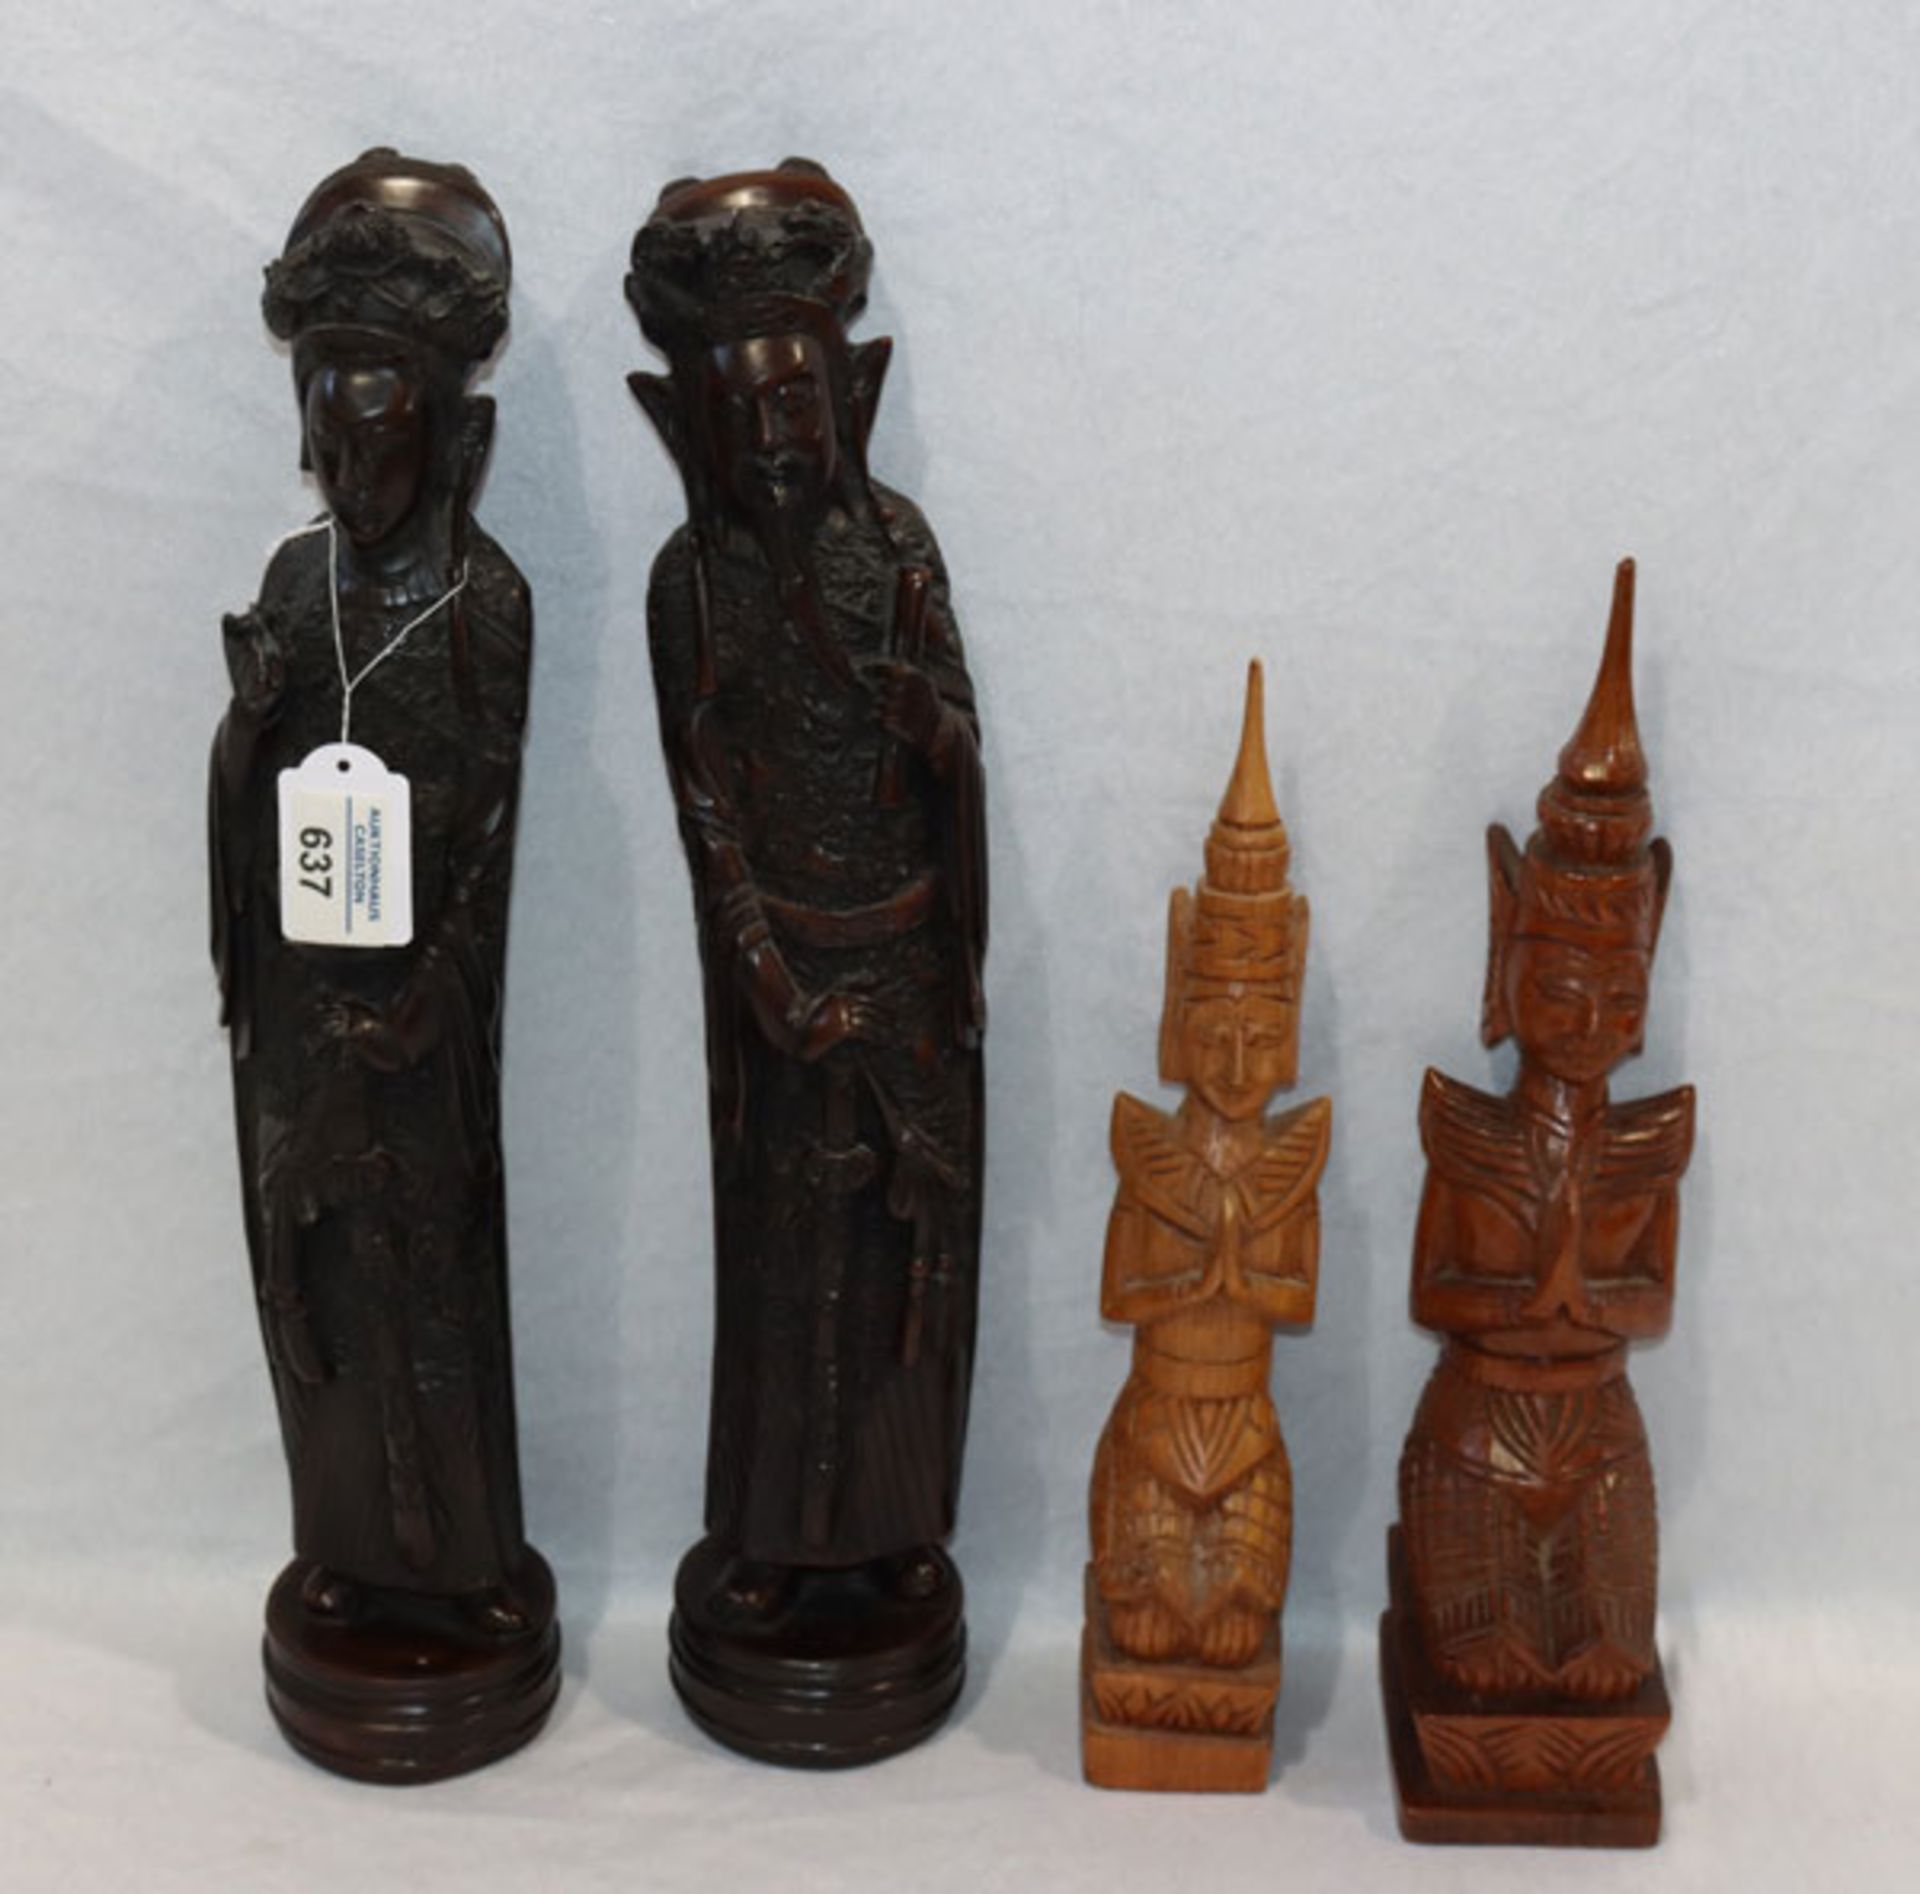 Konvolut: Asiatisches Figurenpaar, beschädigt, H 42 cm, D 8 cm und 2 thailändische Holzfiguren, H